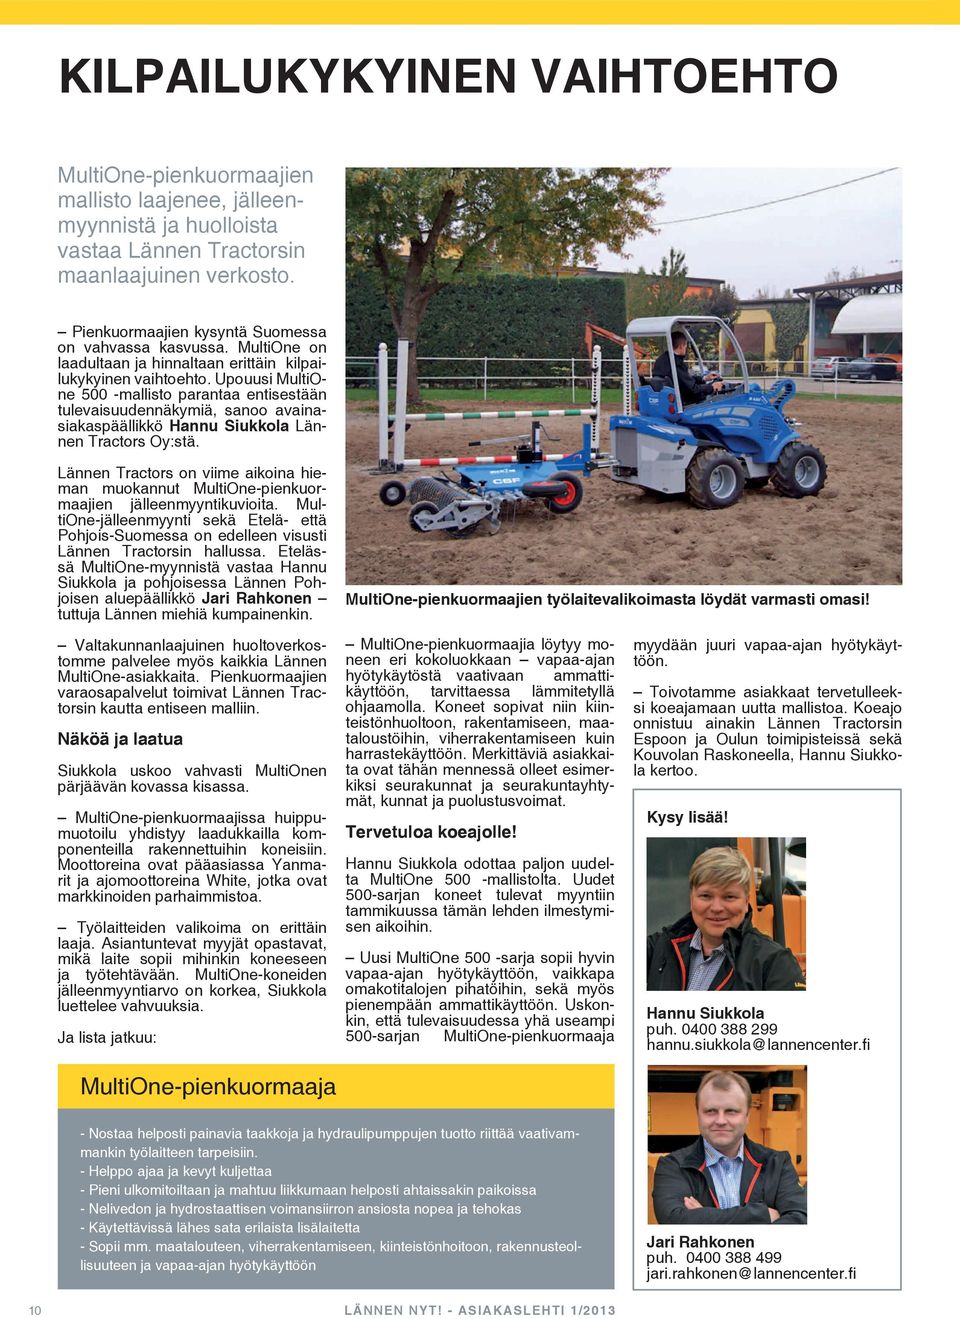 Upouusi MultiOne 500 -mallisto parantaa entisestään tulevaisuudennäkymiä, sanoo avainasiakaspäällikkö Hannu Siukkola Lännen Tractors Oy:stä.